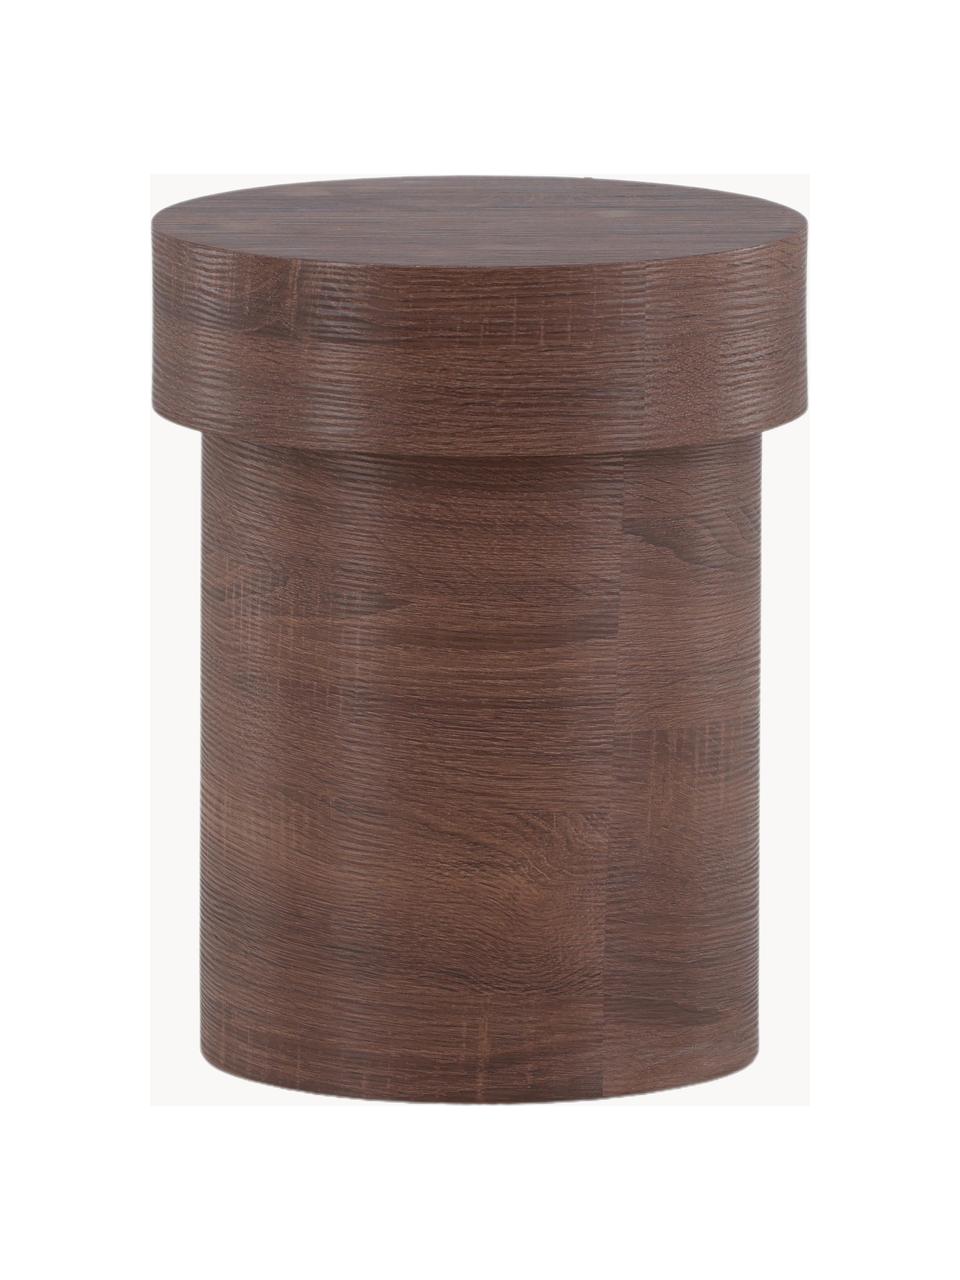 Okrúhly drevený odkladací stolík Malung, Drevovláknitá doska strednej hustoty (MDF) s papierovým laminátom, Drevo, tmavohnedá laminovaný, Ø 35 x V 45 cm